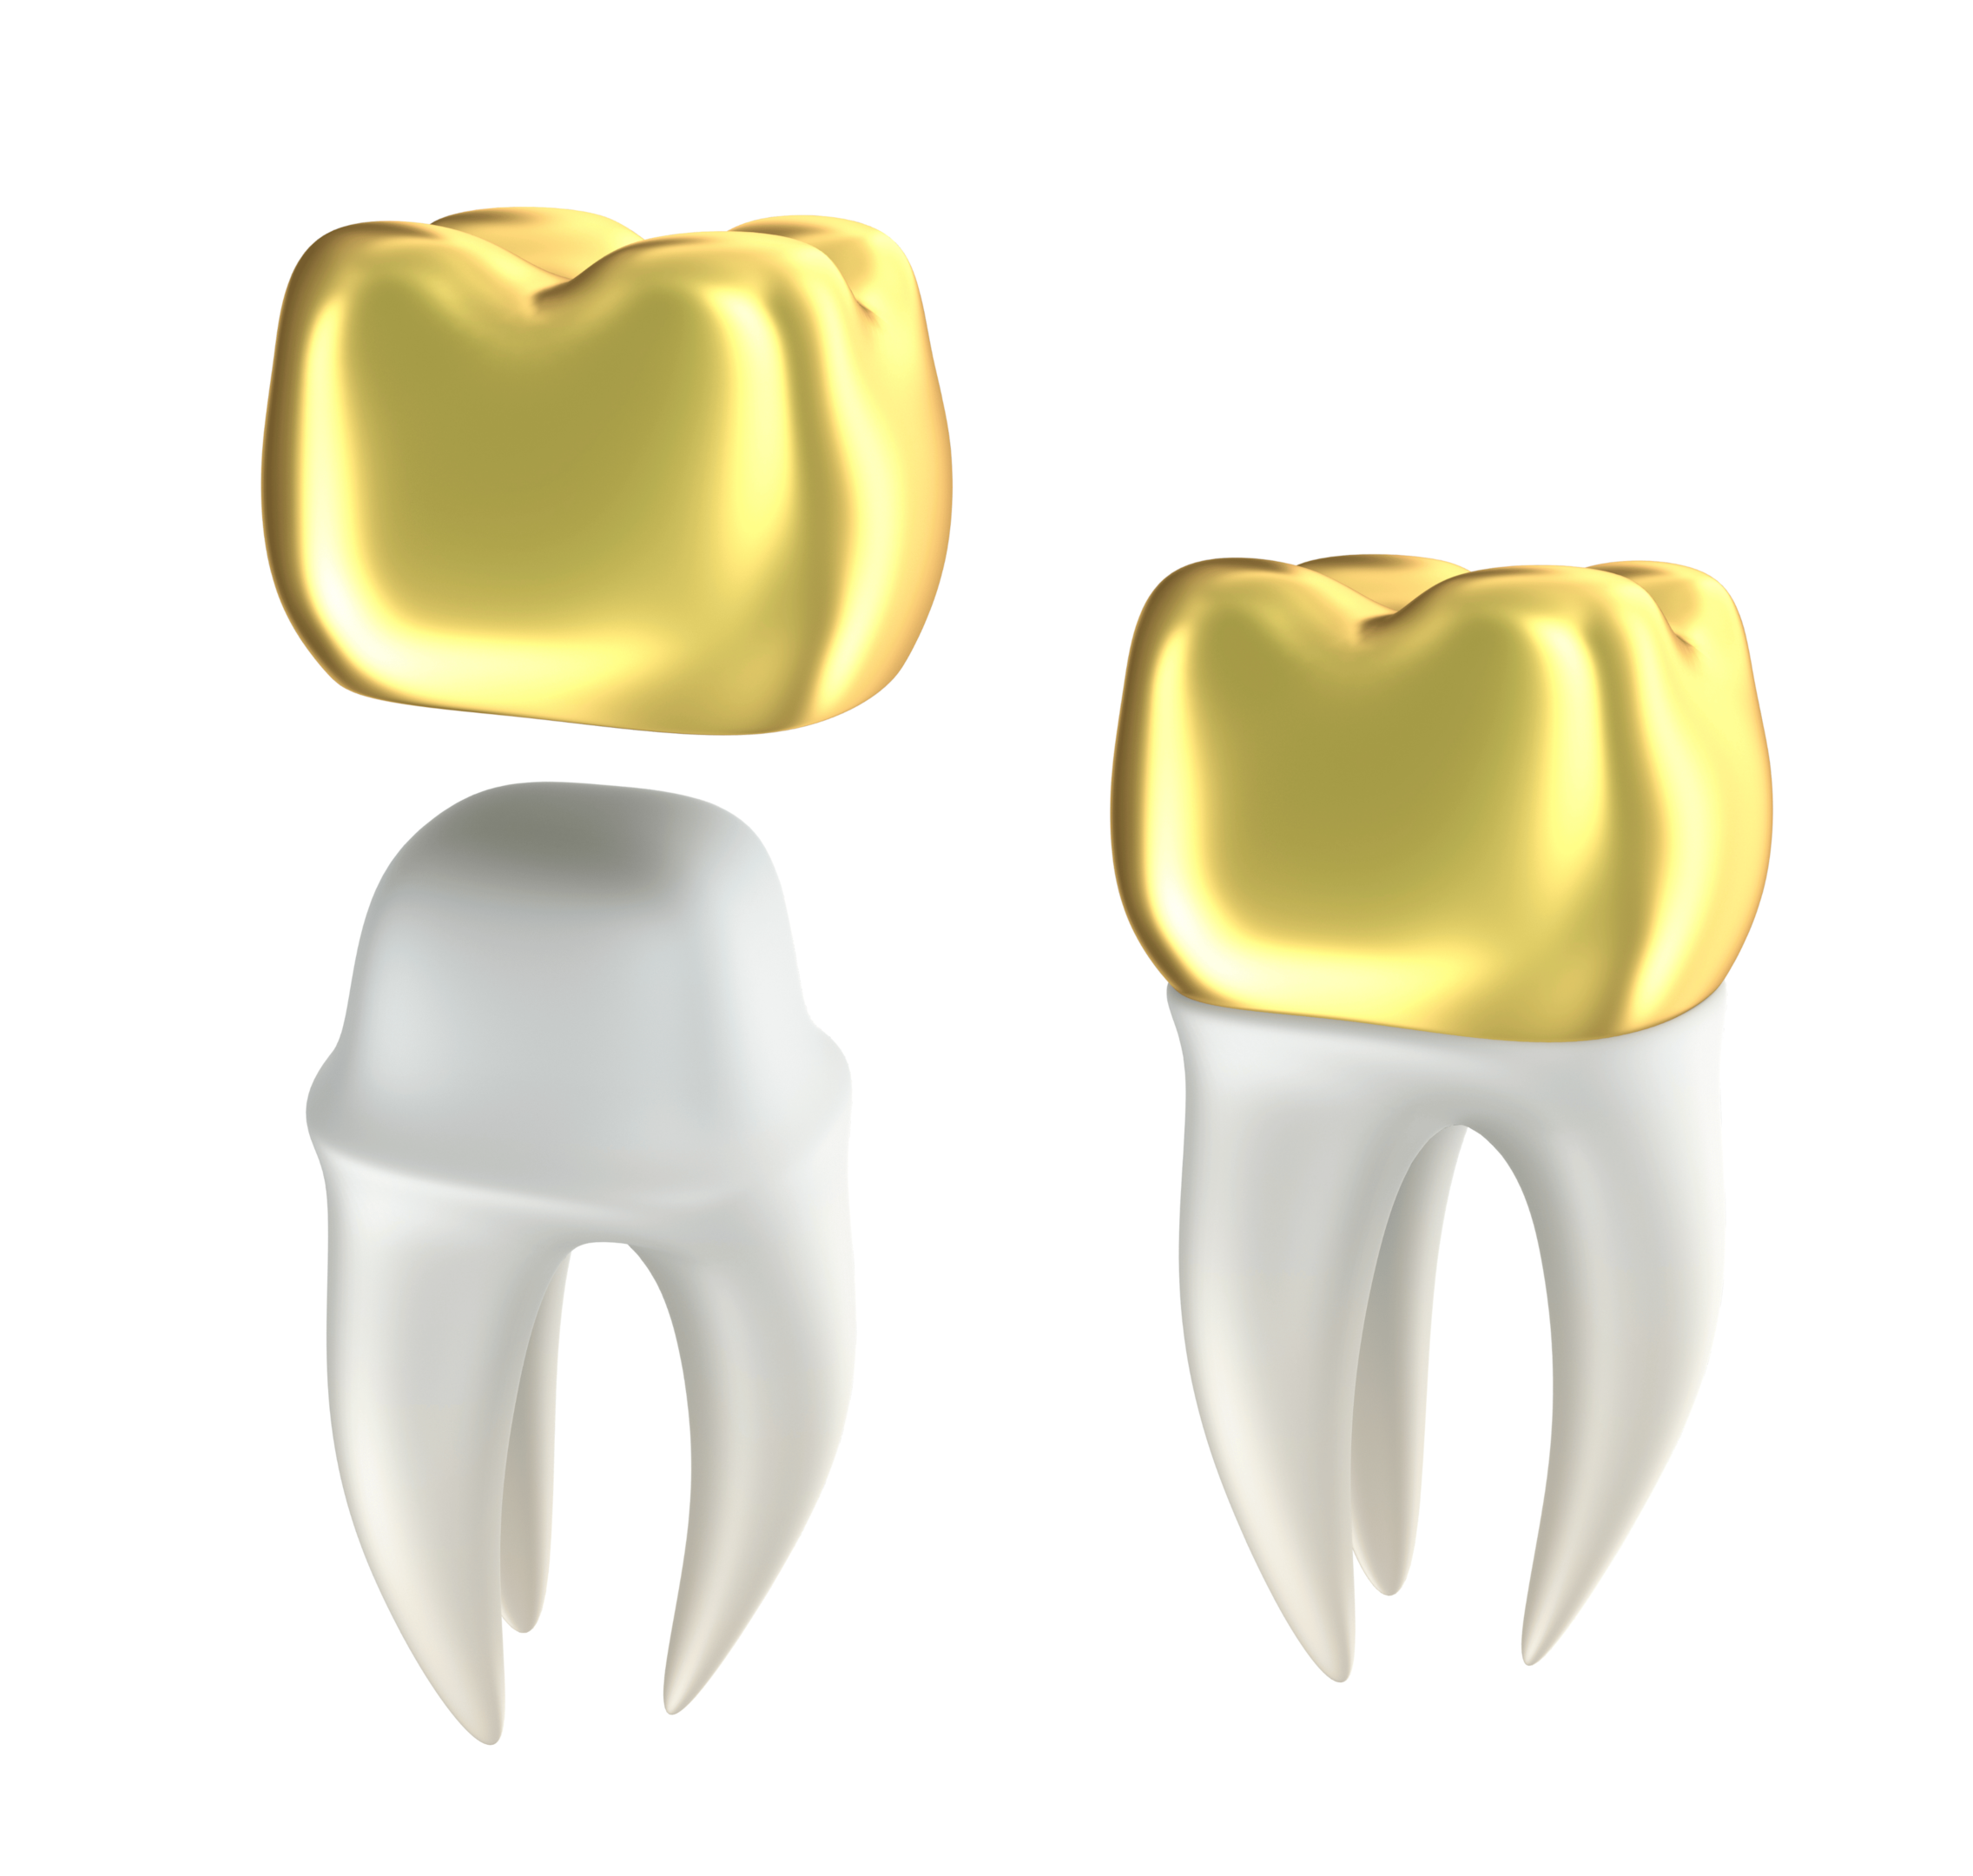 Hvis du må erstatte tannkronen din, så kan du få en i gull